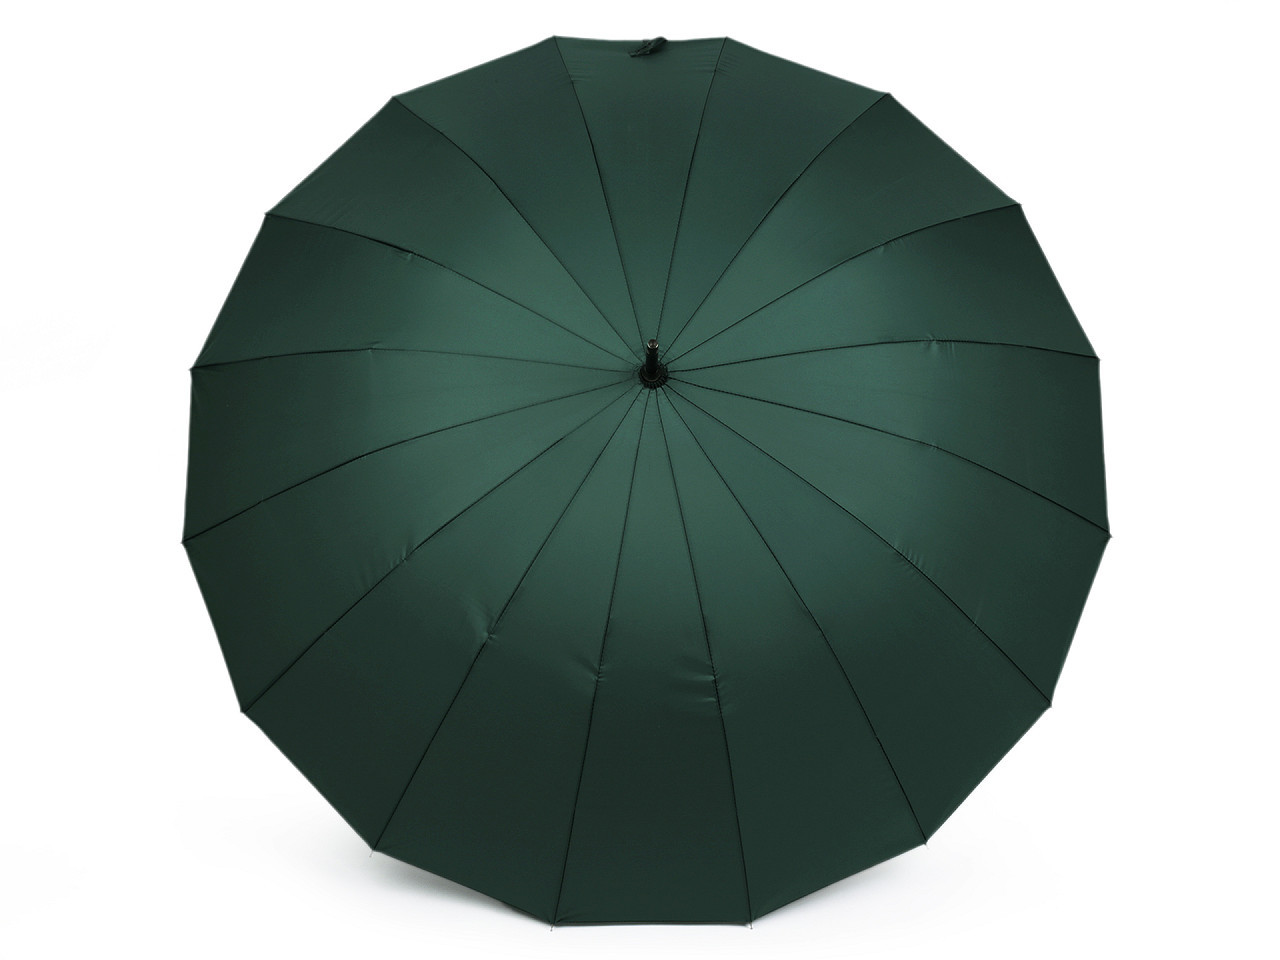 Velký rodinný deštník s dřevěnou rukojetí, barva 4 zelená tmavá